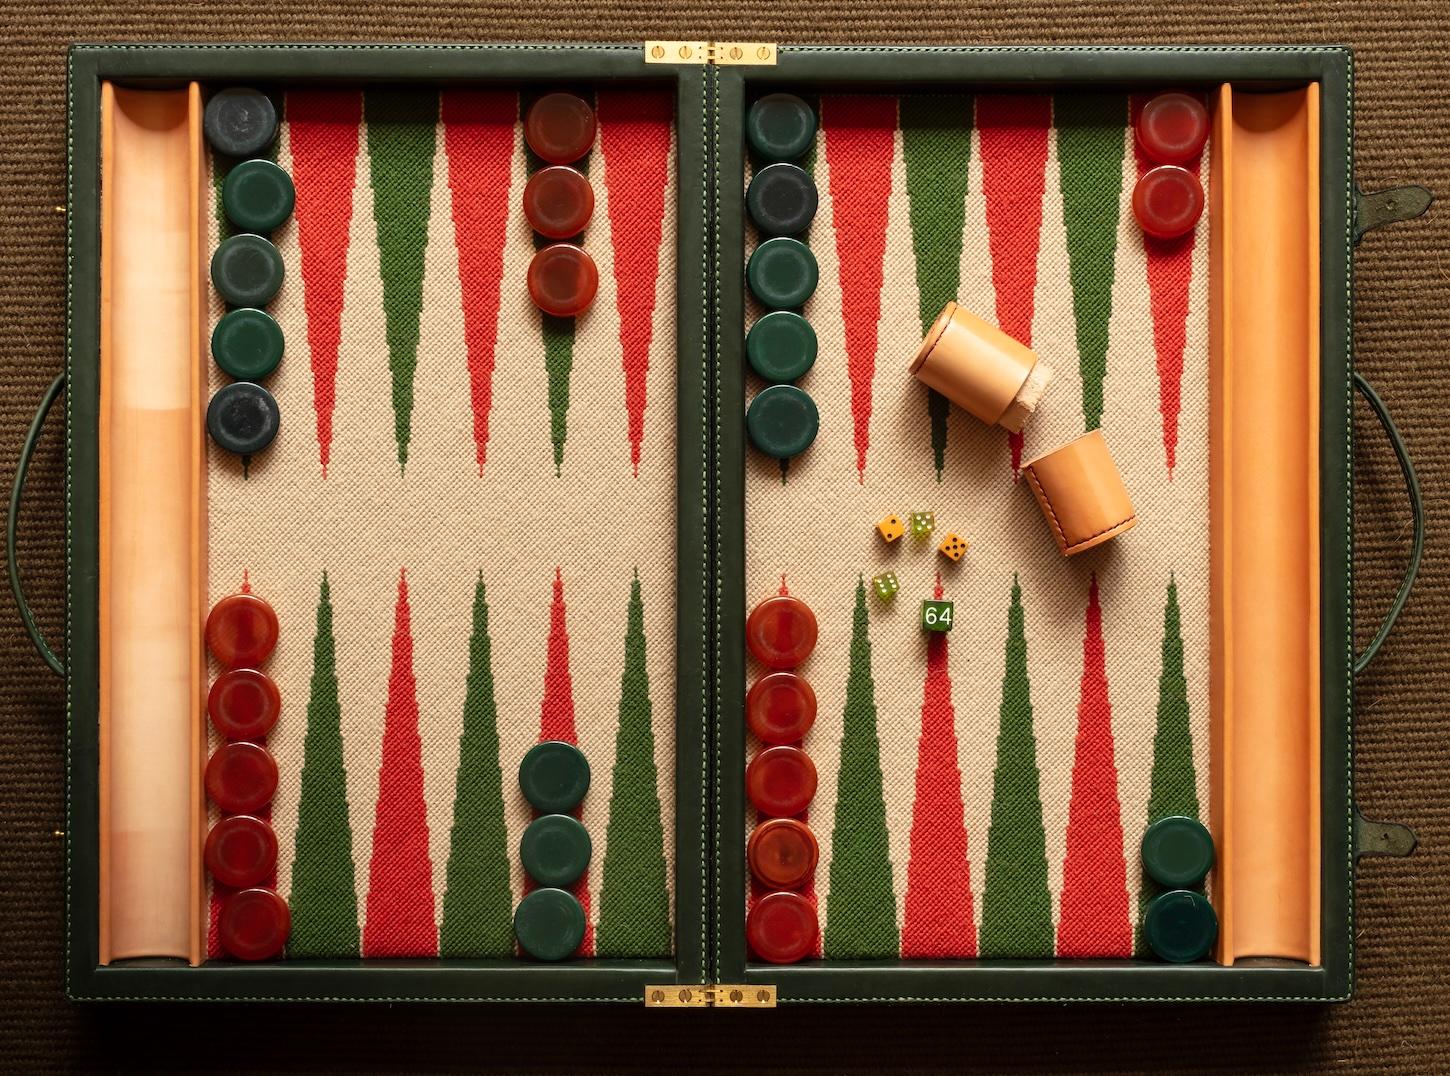 where did backgammon originate